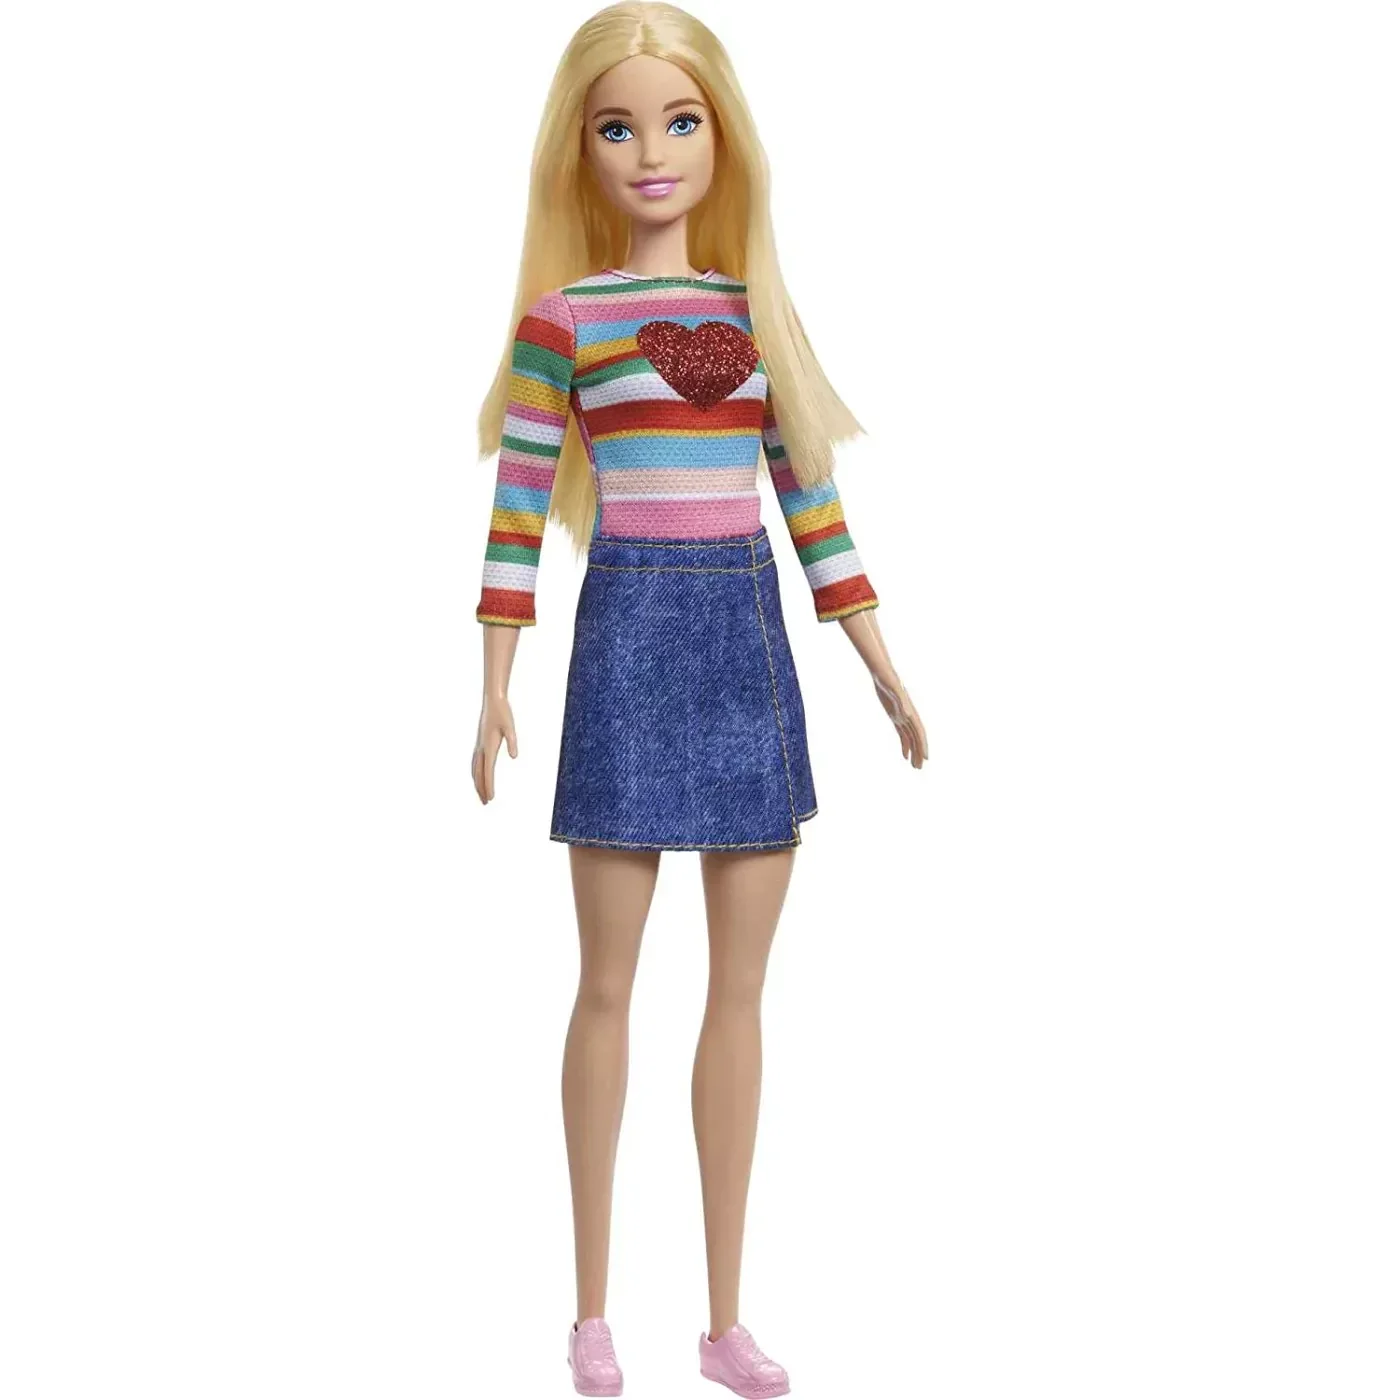 Lėlė Barbie Cutie Reveal minkštutėlis meškutės rinkinys, įvairių rūšių